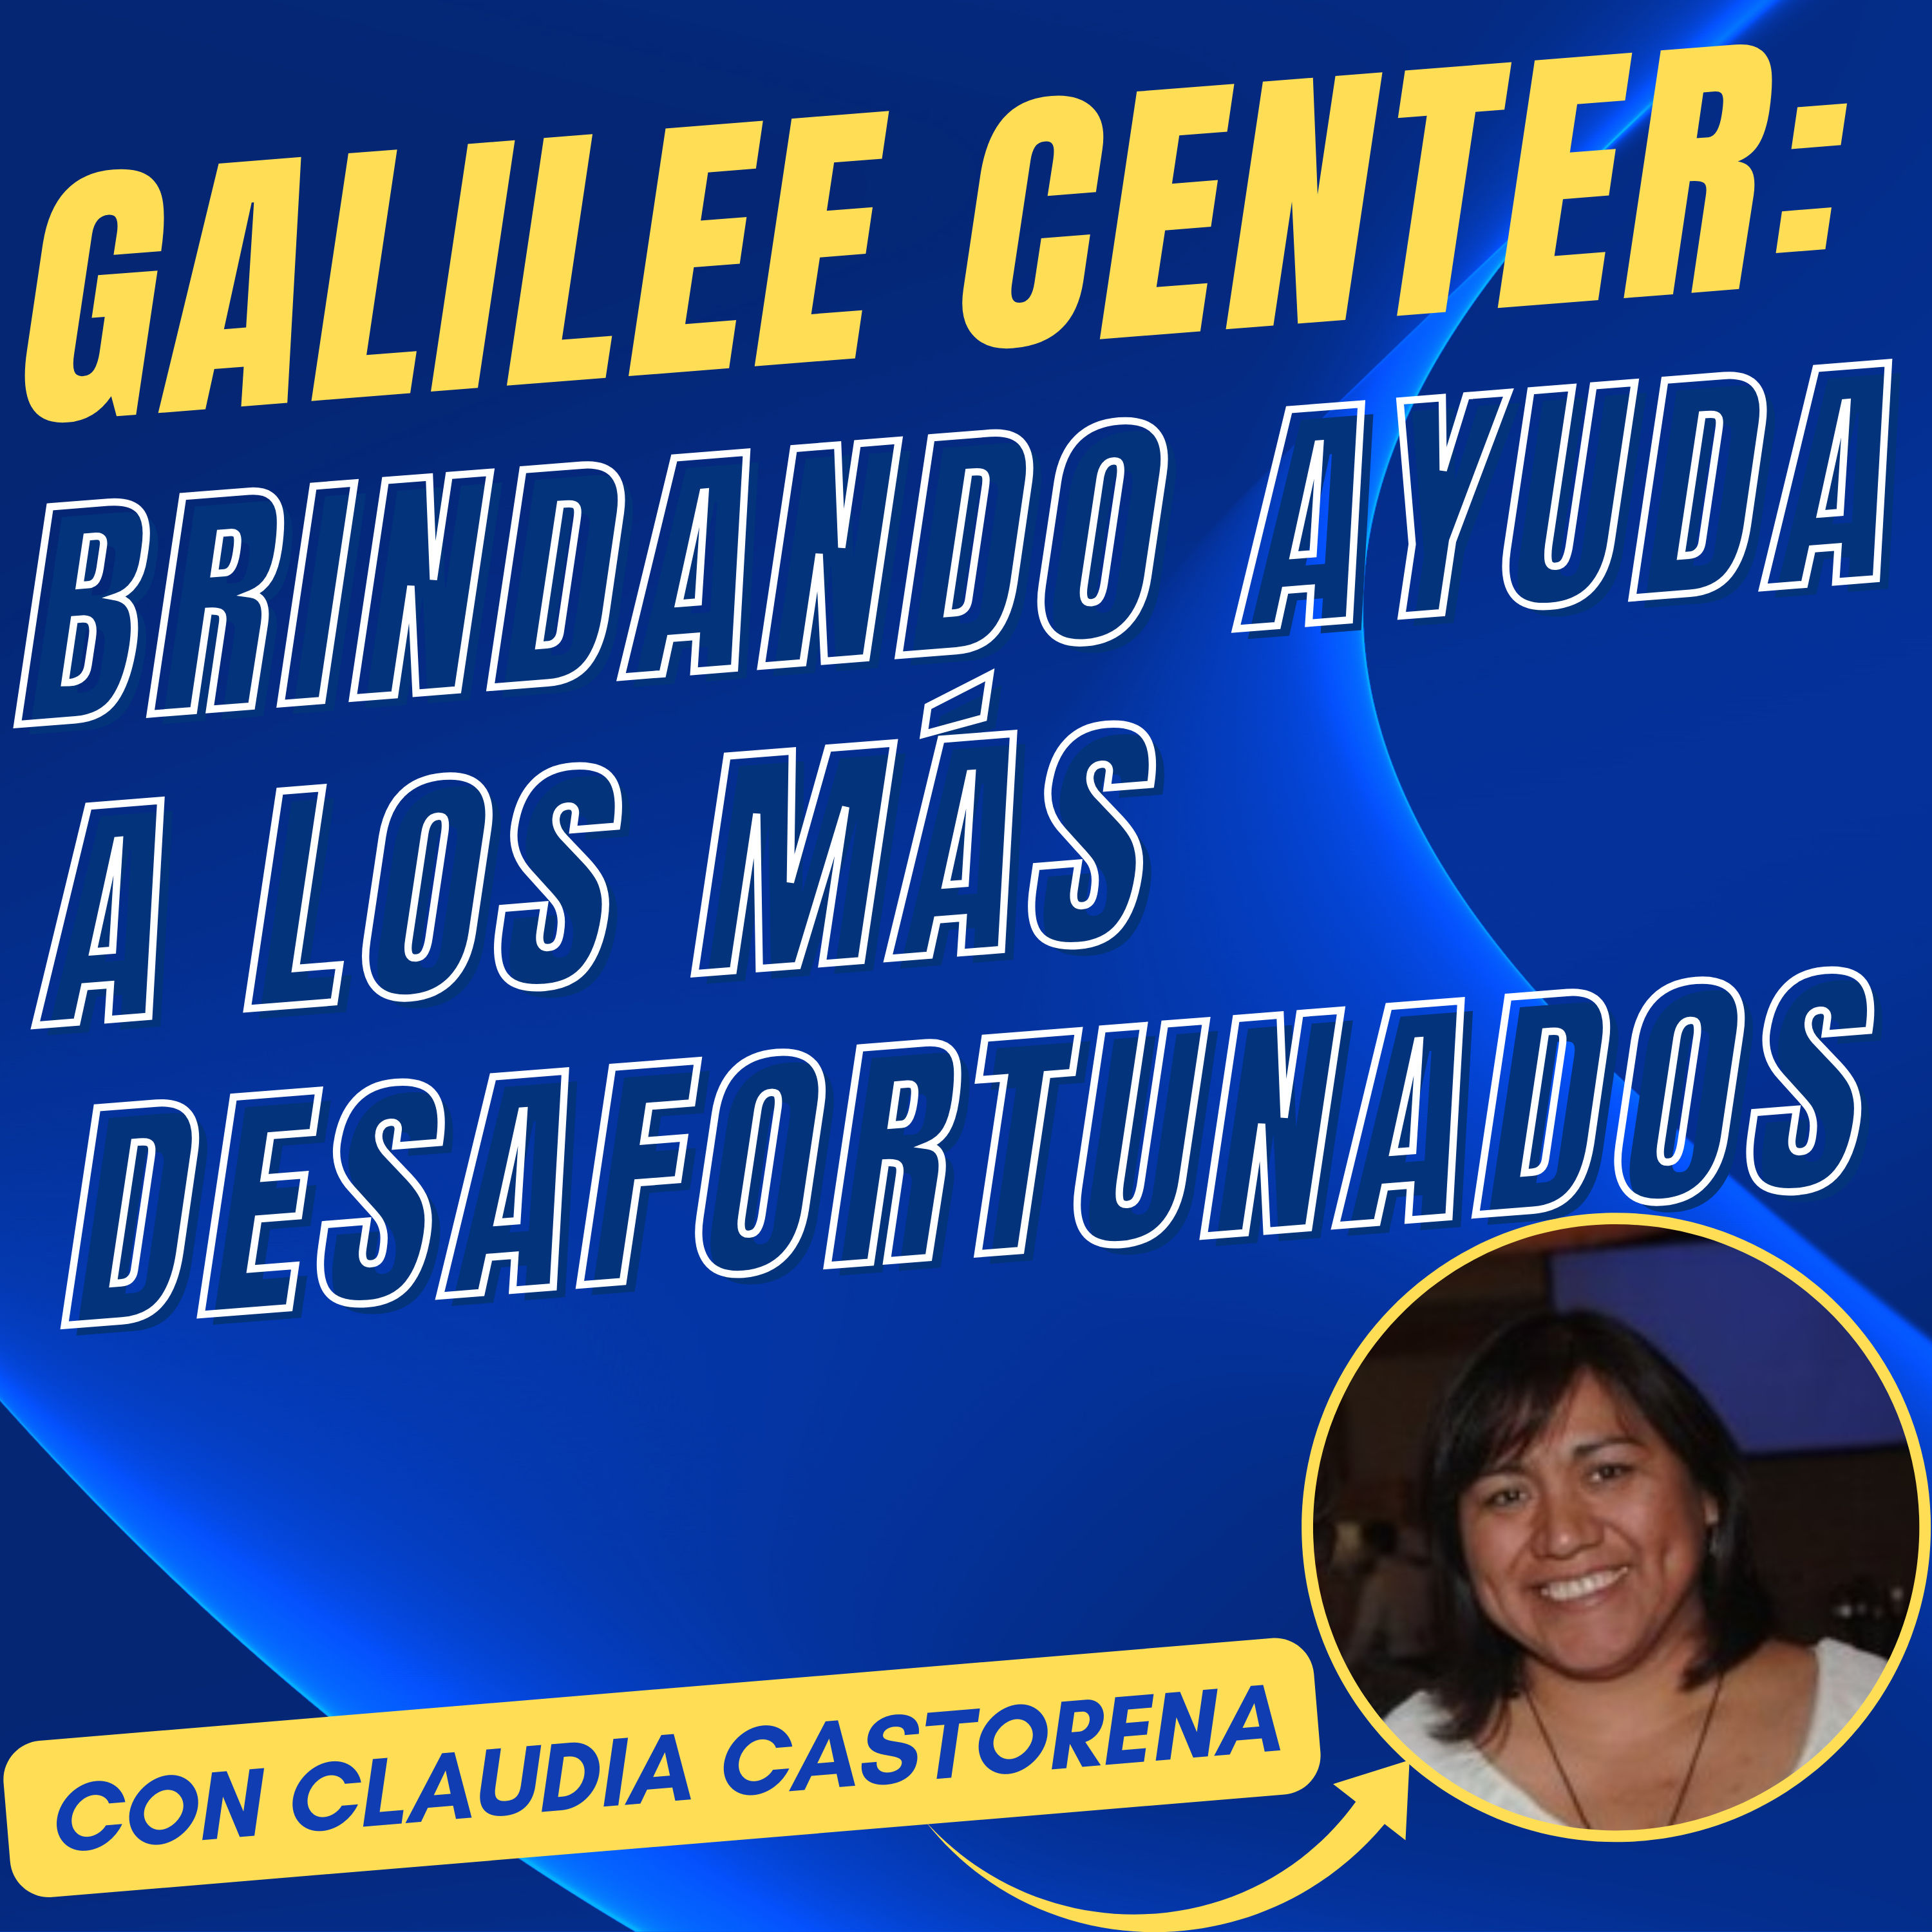 Claudia Castorena nos habla sobre Galilee Center